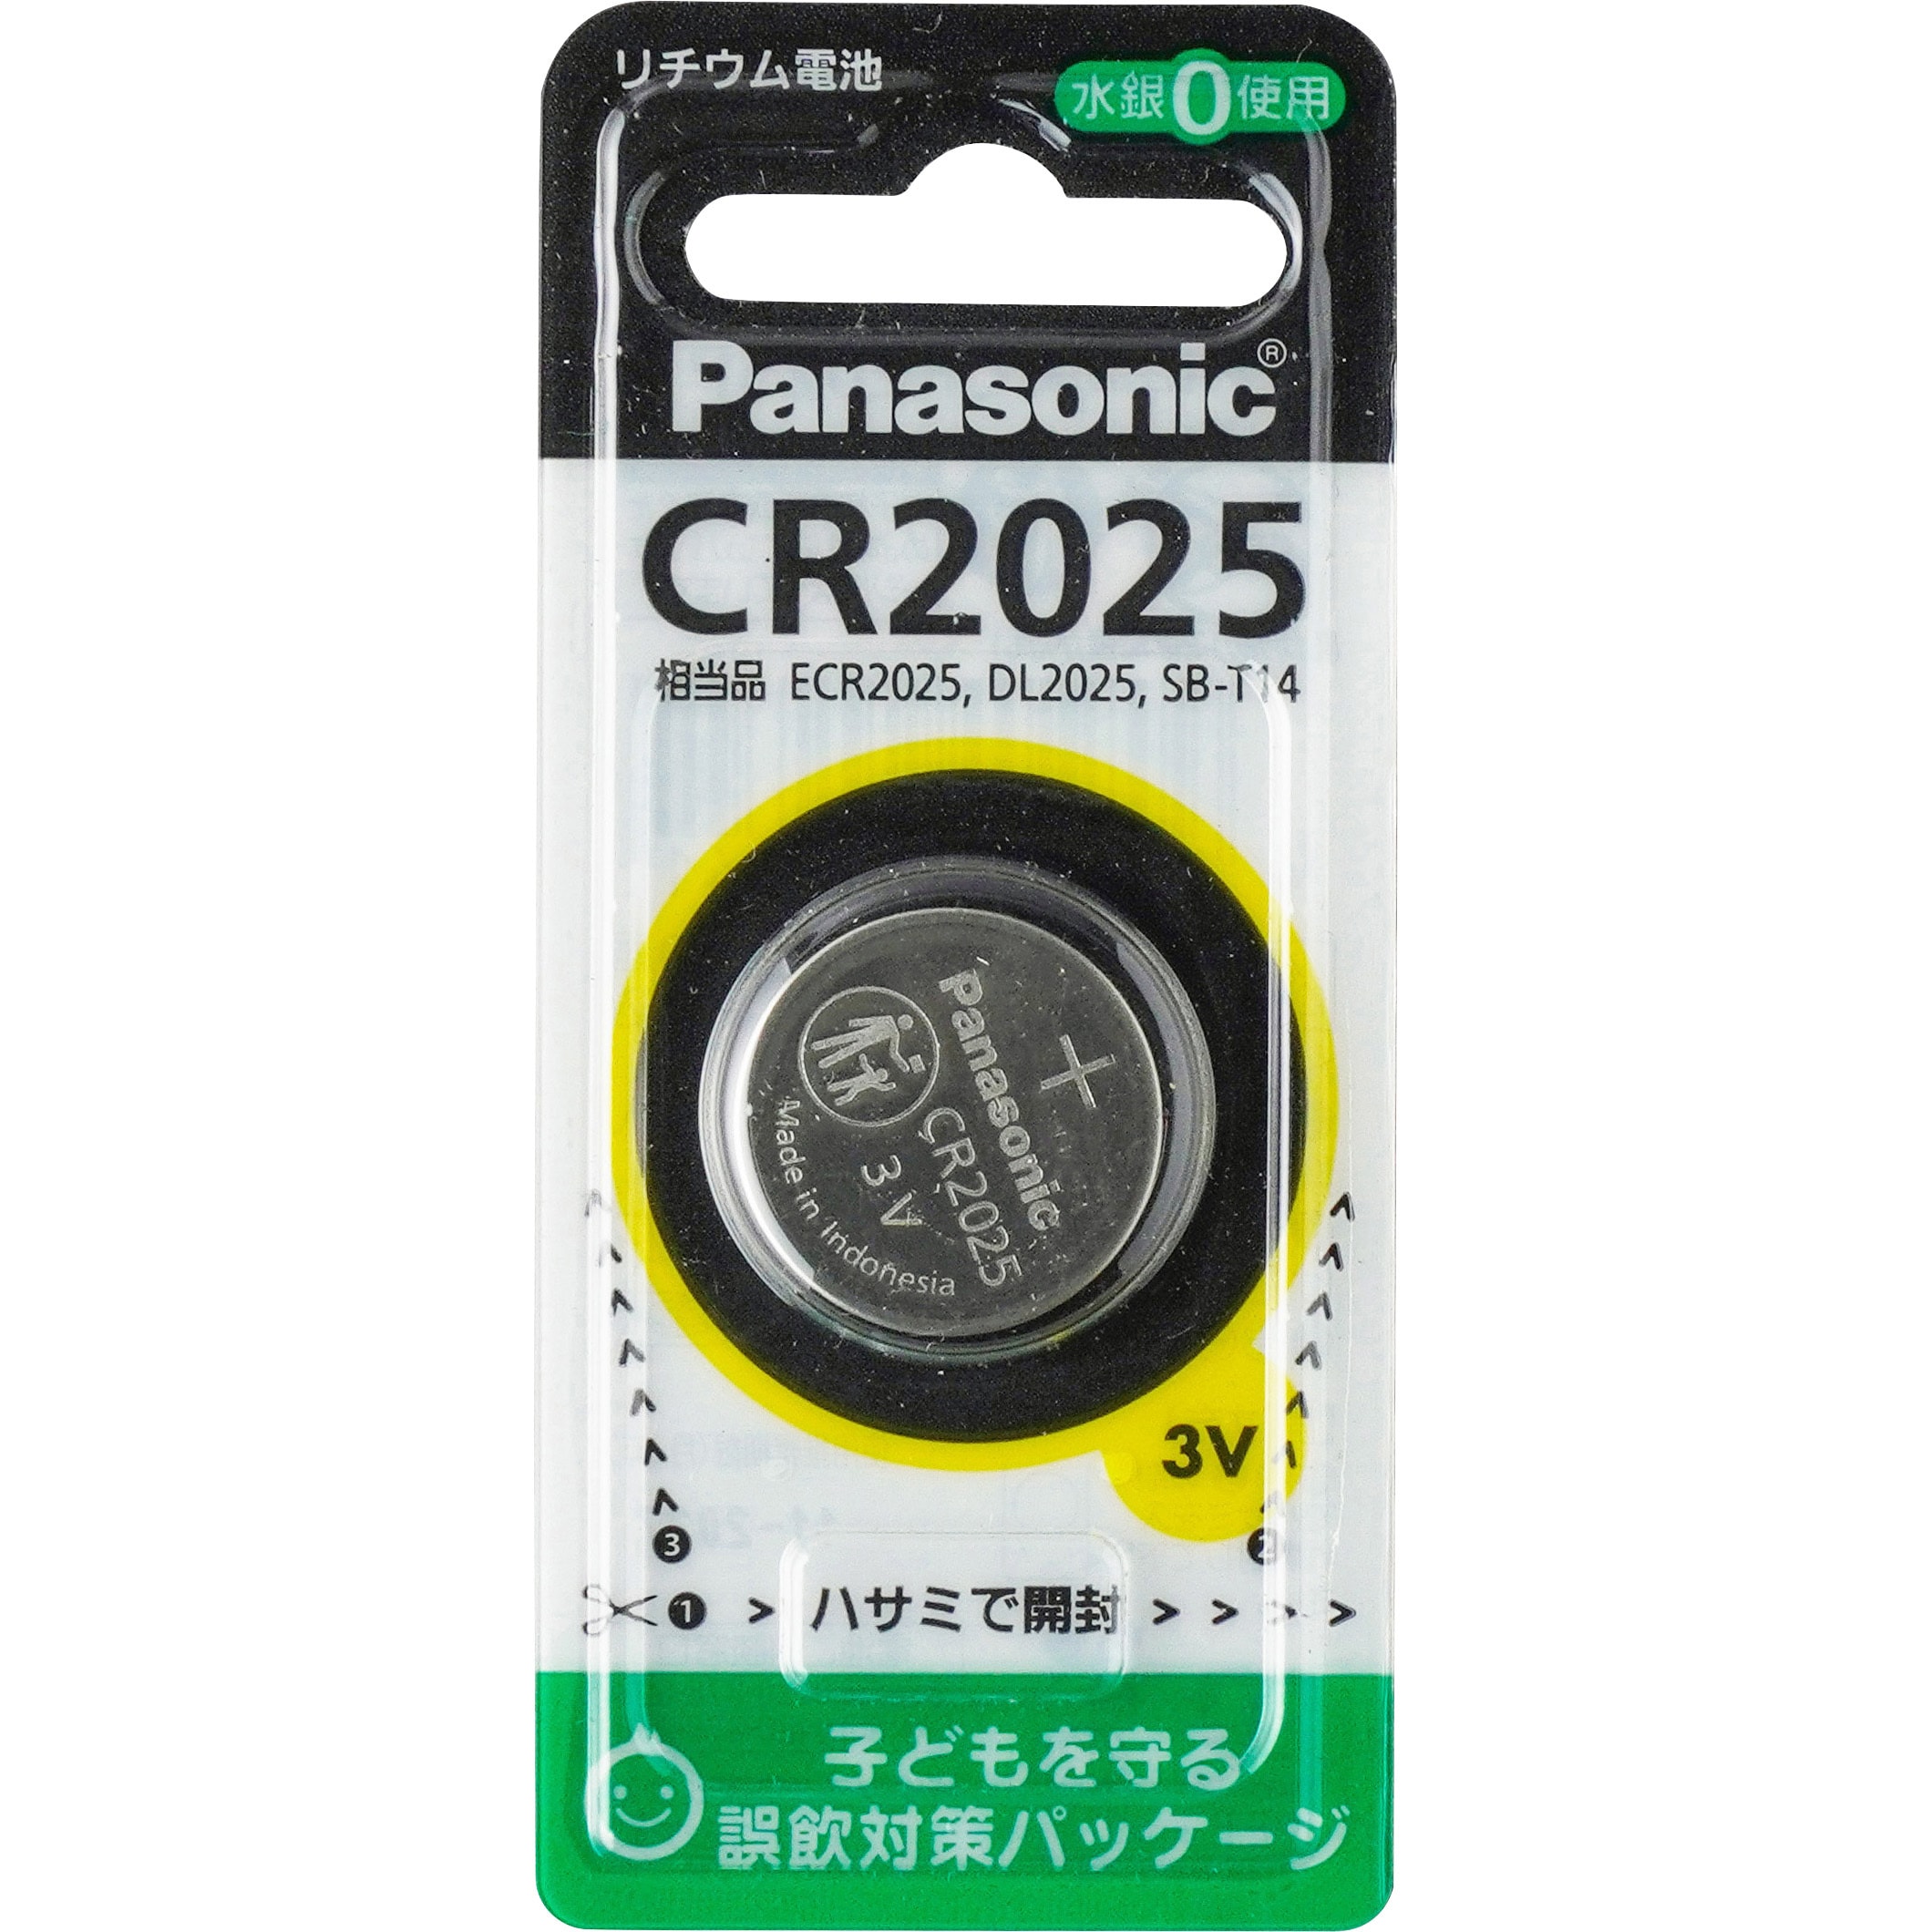 ボタン電池CR2025